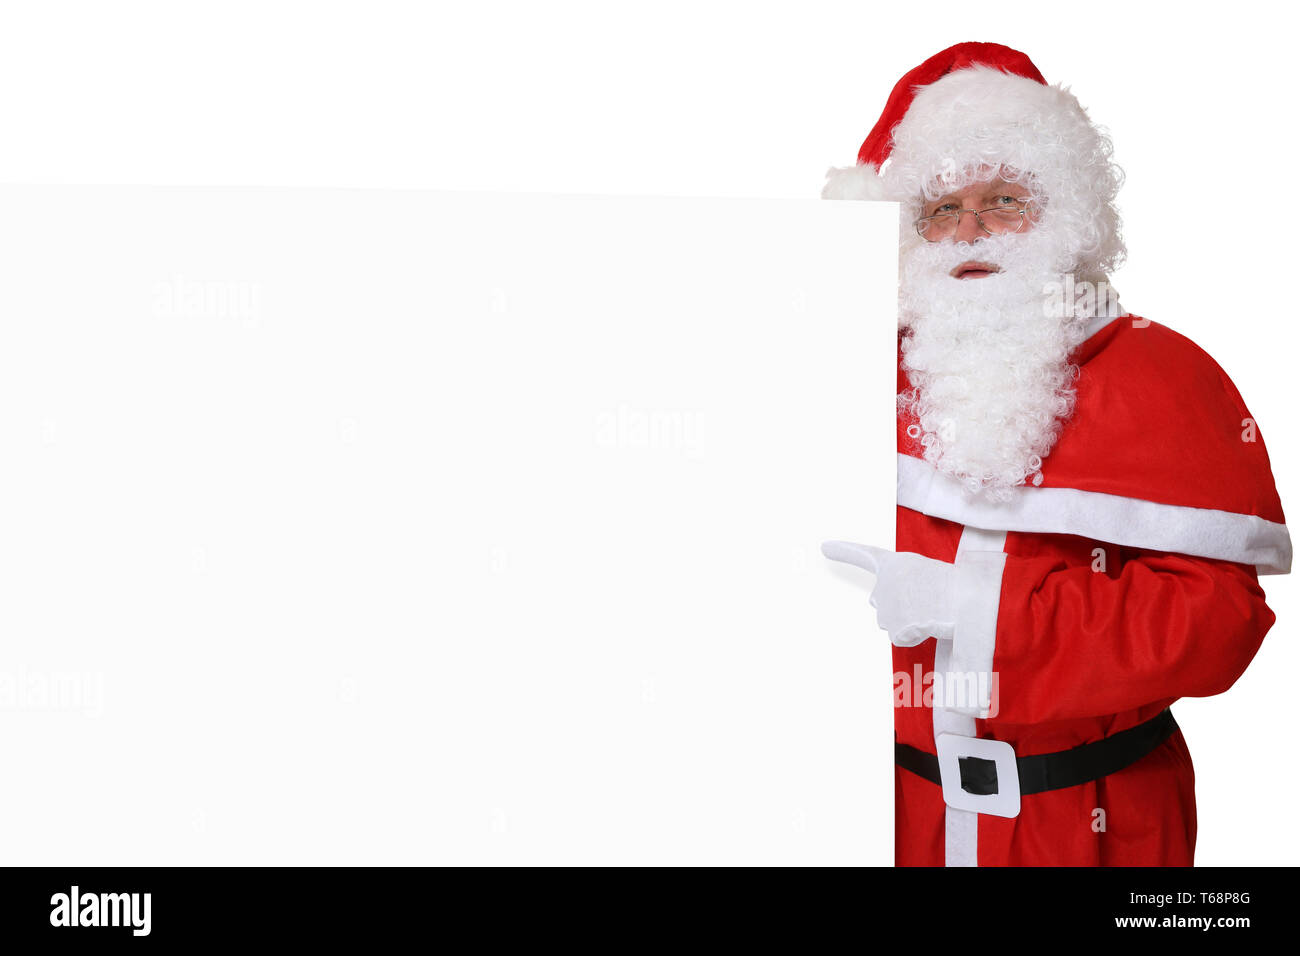 Weihnachtsmann Nikolaus mit Mütze zeigt an Weihnachten auf leeres Schild  mit Textfreiraum Stock Photo - Alamy